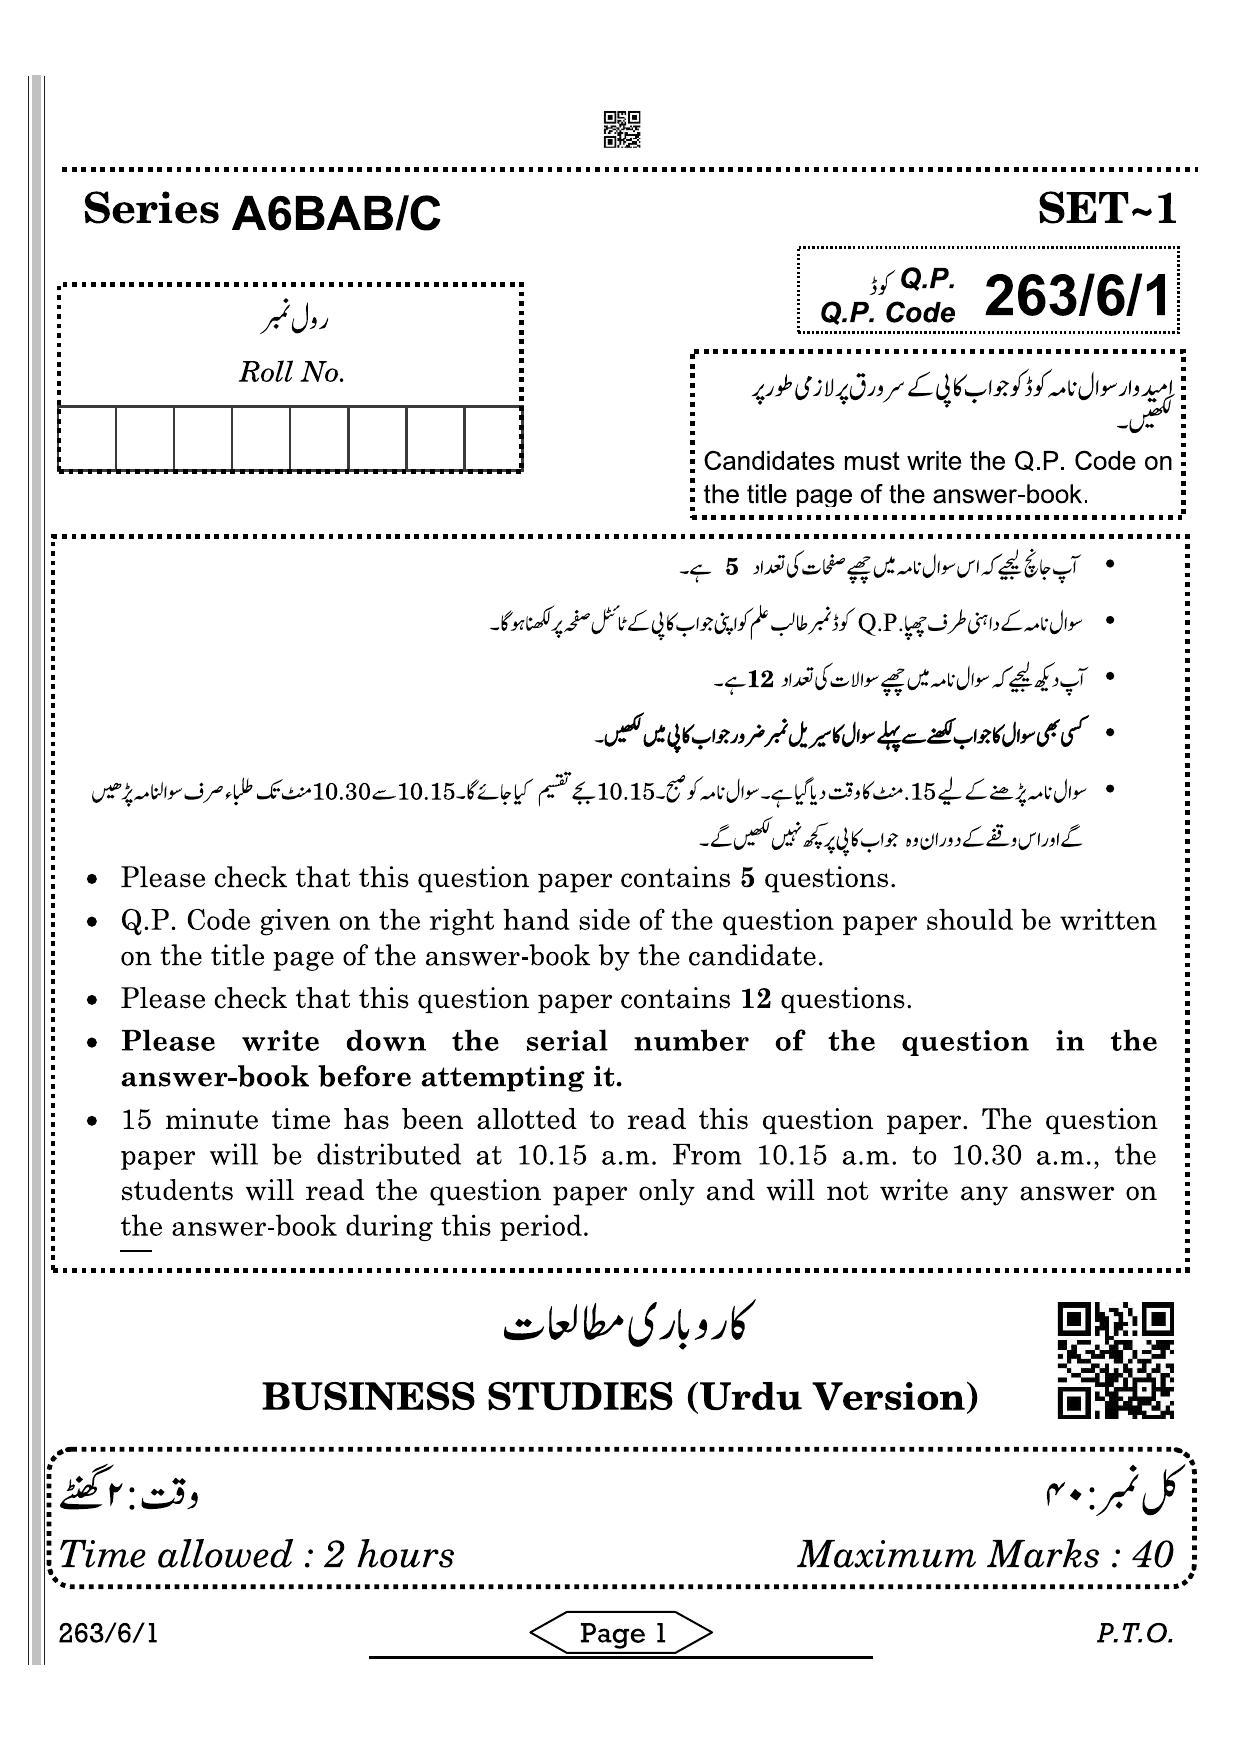 CBSE Class 12 263-6-1 Business Studies Urdu 2022 Compartment Question Paper - Page 1